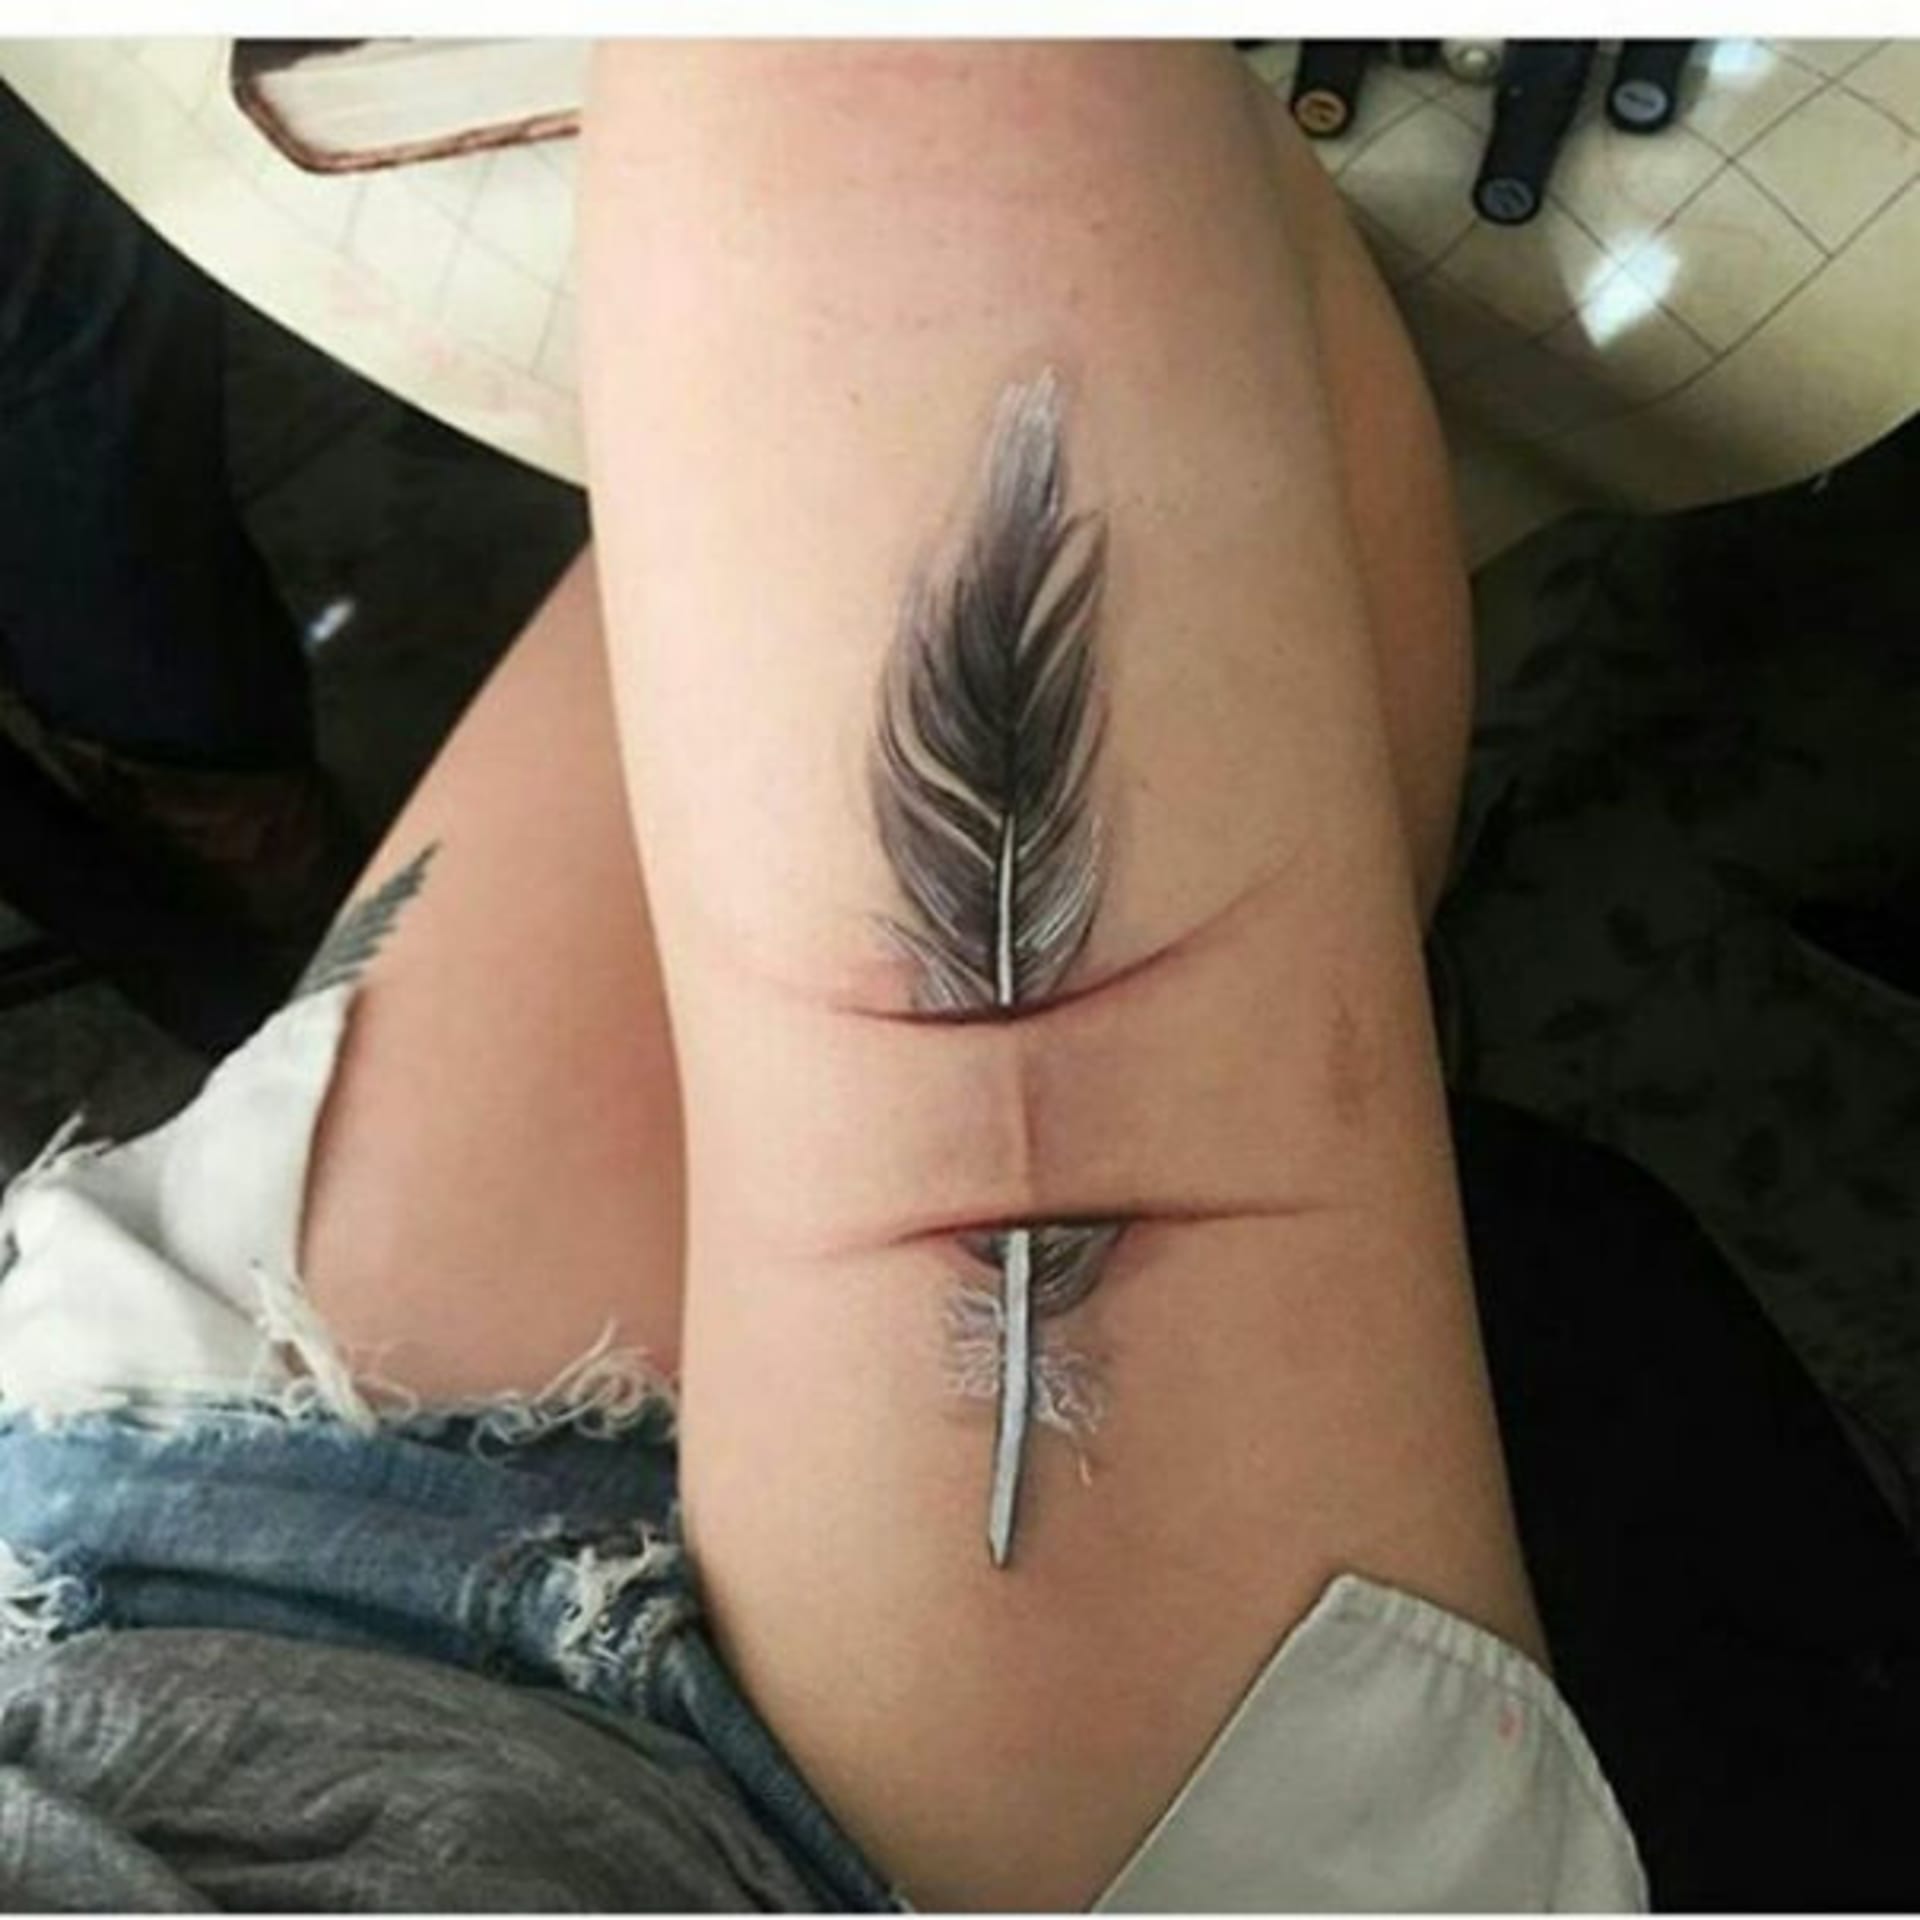 Nápadité tetování, které využilo jizvu pro tvorbu pírka.